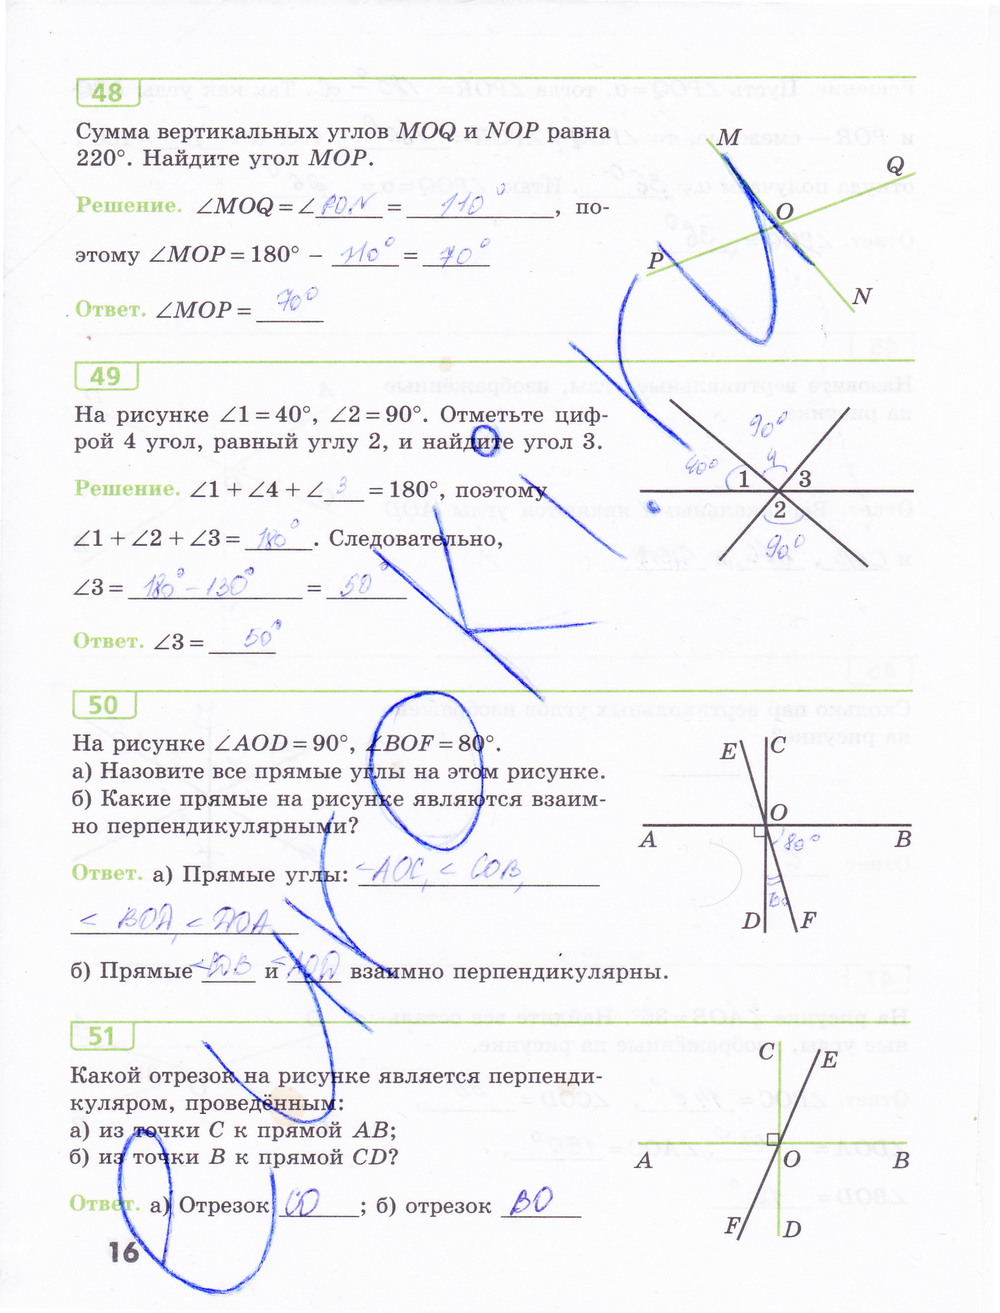 Геометрия за 7 класс рабочая тетрадь 15-е издание готовые ответы на задачи